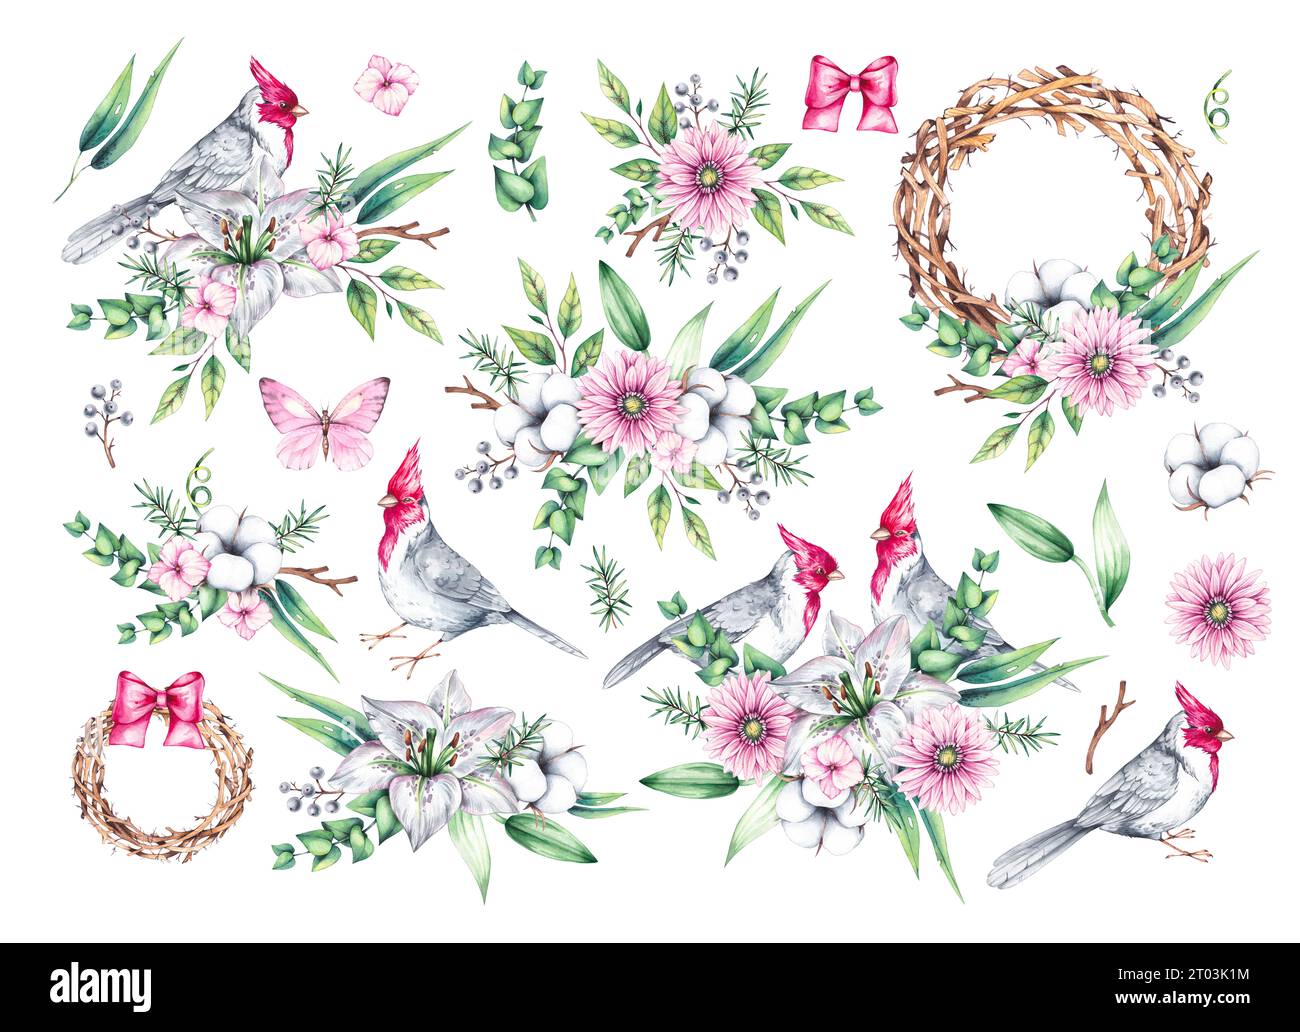 Aquarellset von Vögeln mit Blumen. Roter Kardinalvogel, Blumensträuße und Kränze auf weiß. Vögel und Blumen handgezeichnet isoliert. Zusammensetzungen mit Vögeln Stockfoto